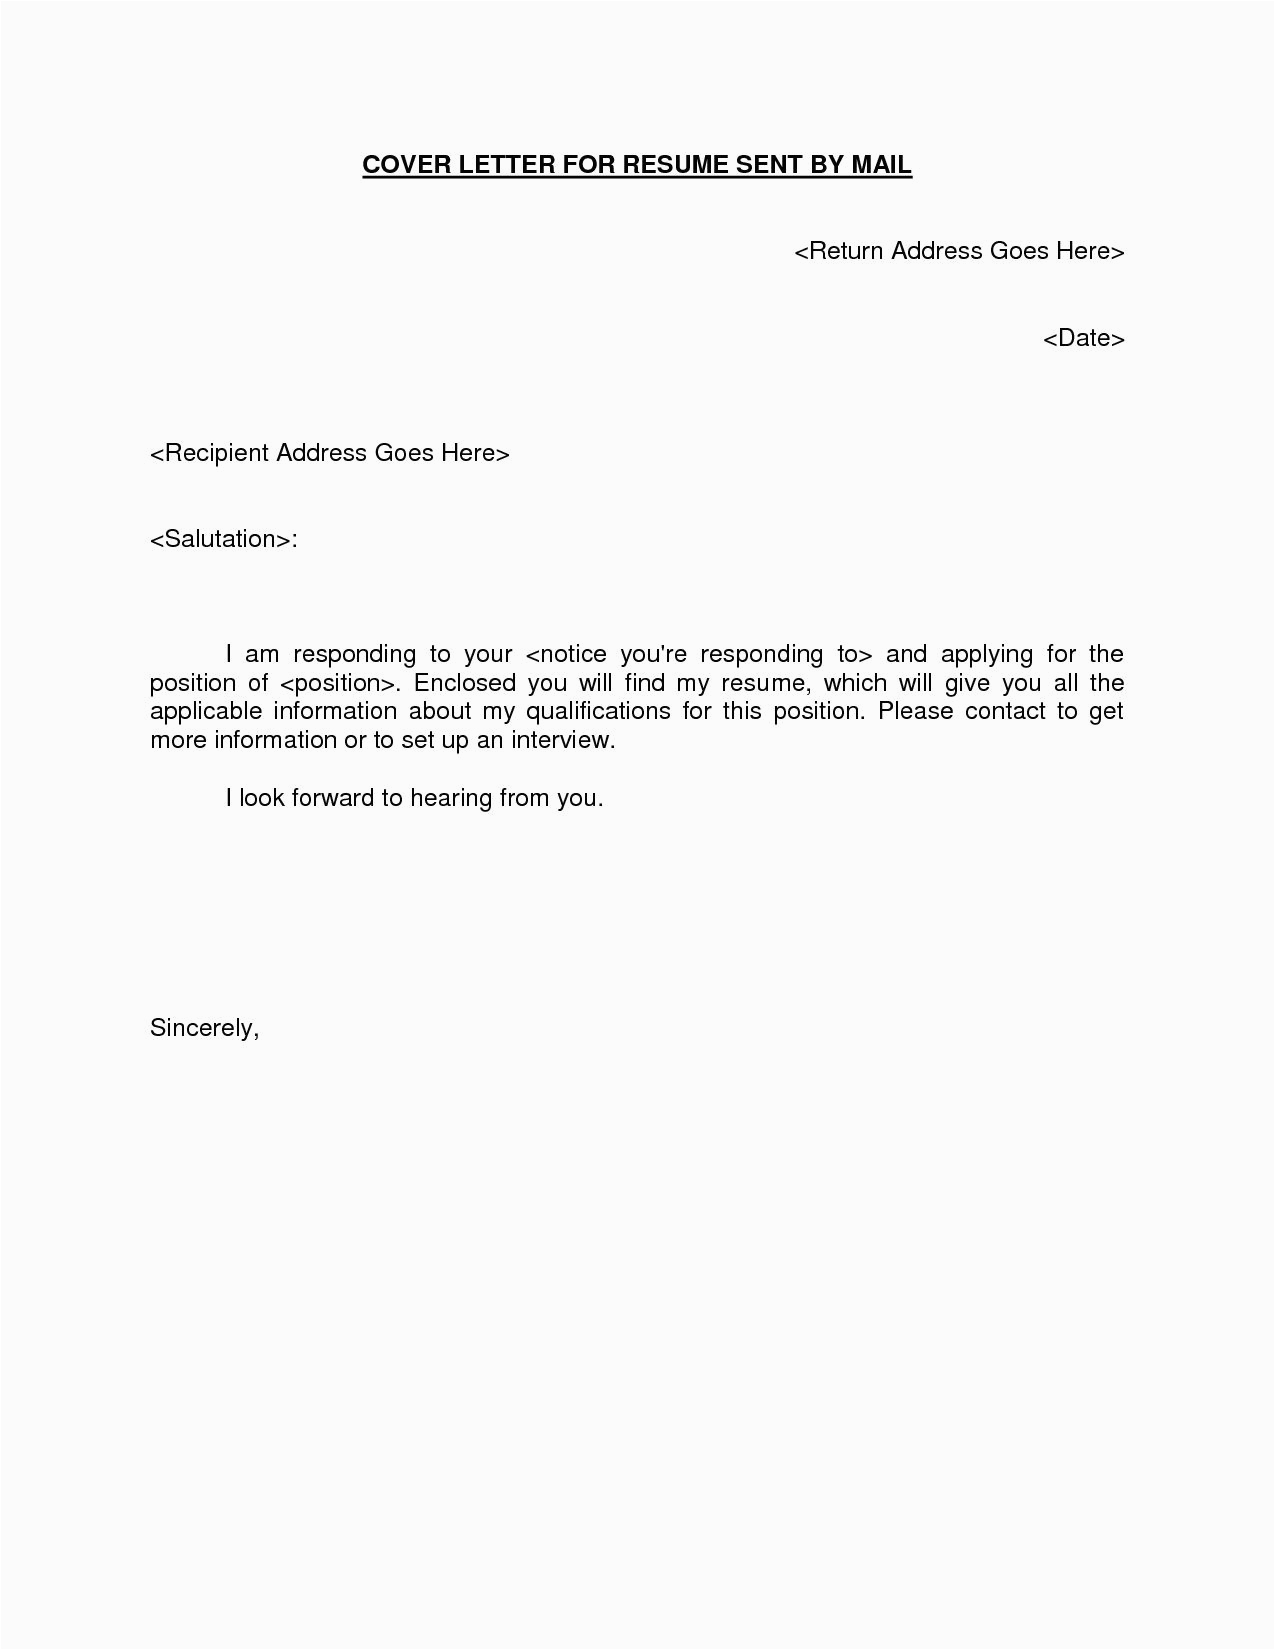 Cover Letter Sample for Sending Resume 25 Email Cover Letter